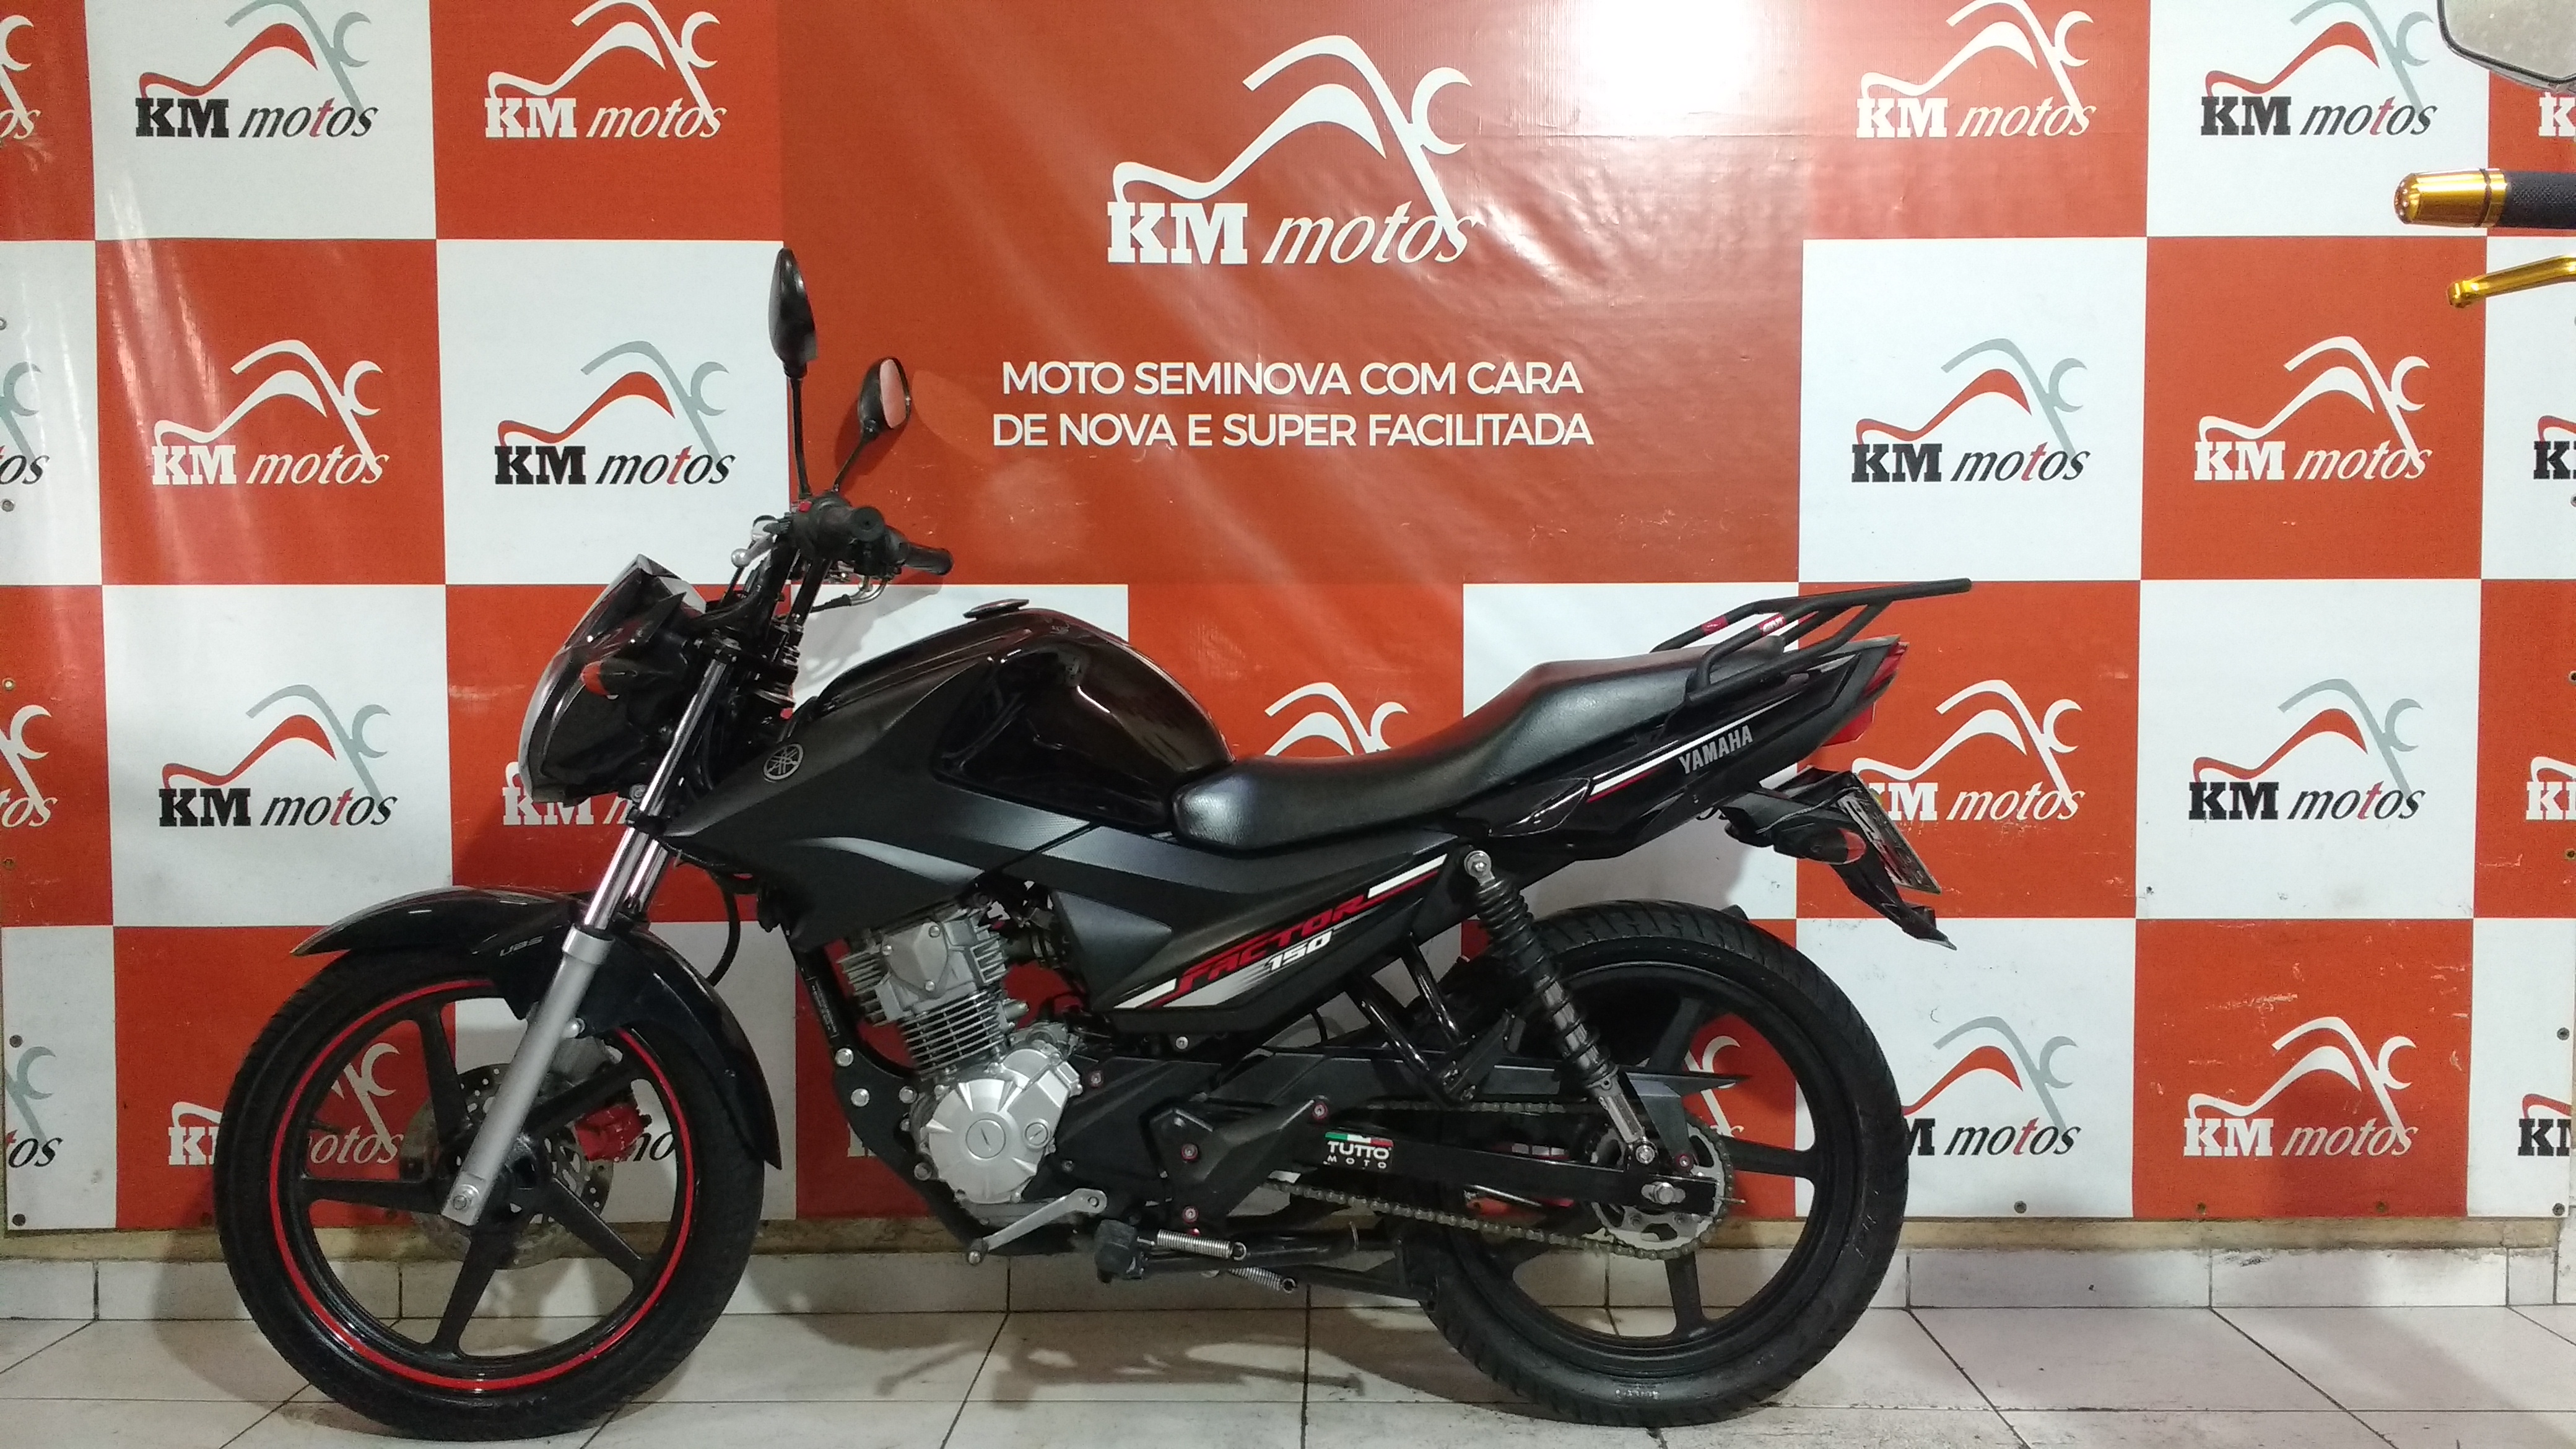 Yamaha Factor 150 Ed Preta 2018 Km Motos Sua Loja De